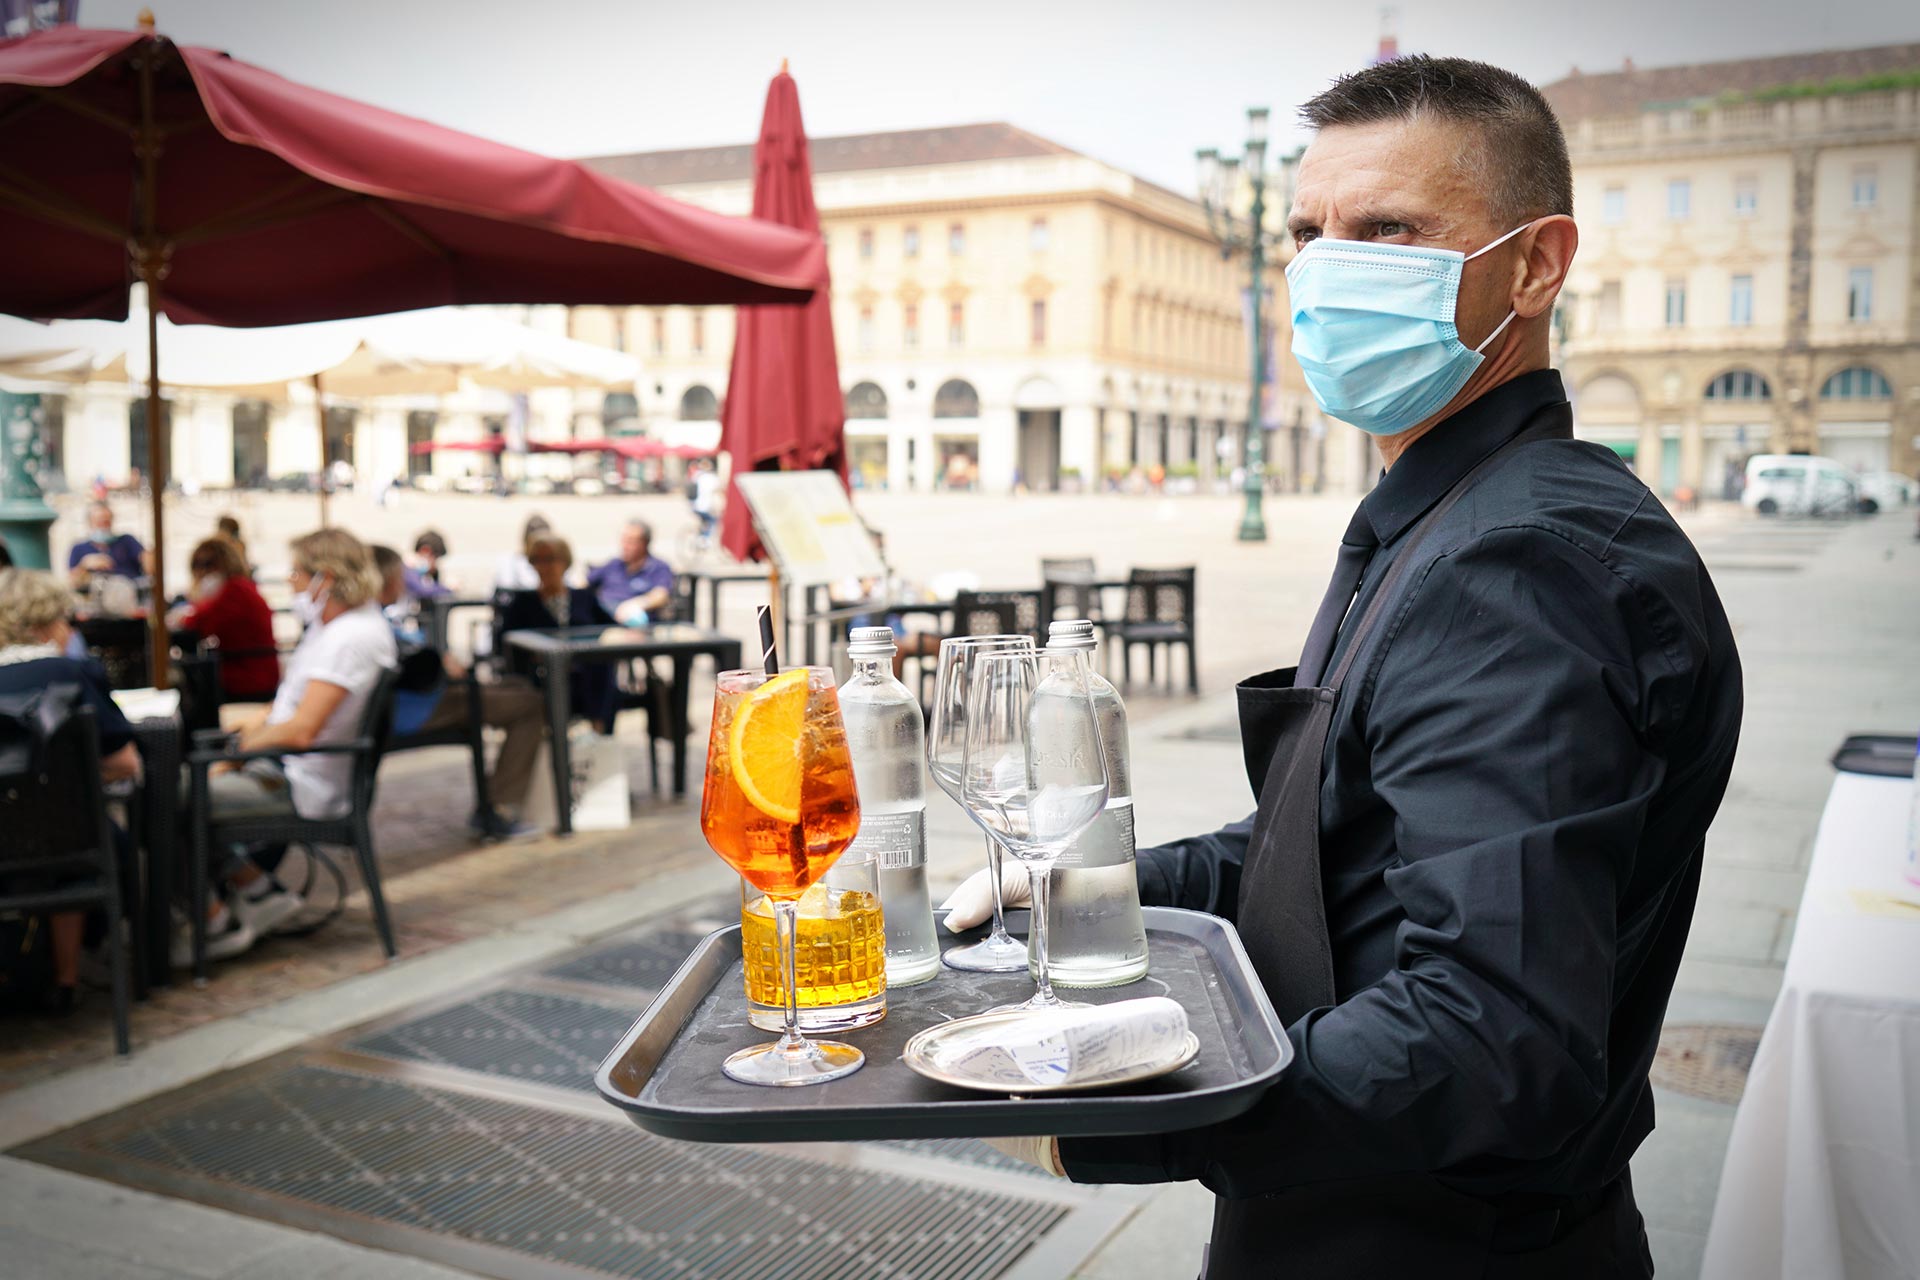 Il dipendente può rifiutarsi di servire il cliente che non indossa la mascherina anti Covid 19 - Licenziamento impugnato dal lavoratore che ritorna sul posto di lavoro (Sentenza n° 9 del 13 gennaio 2021 del Tribunale di Arezzo)